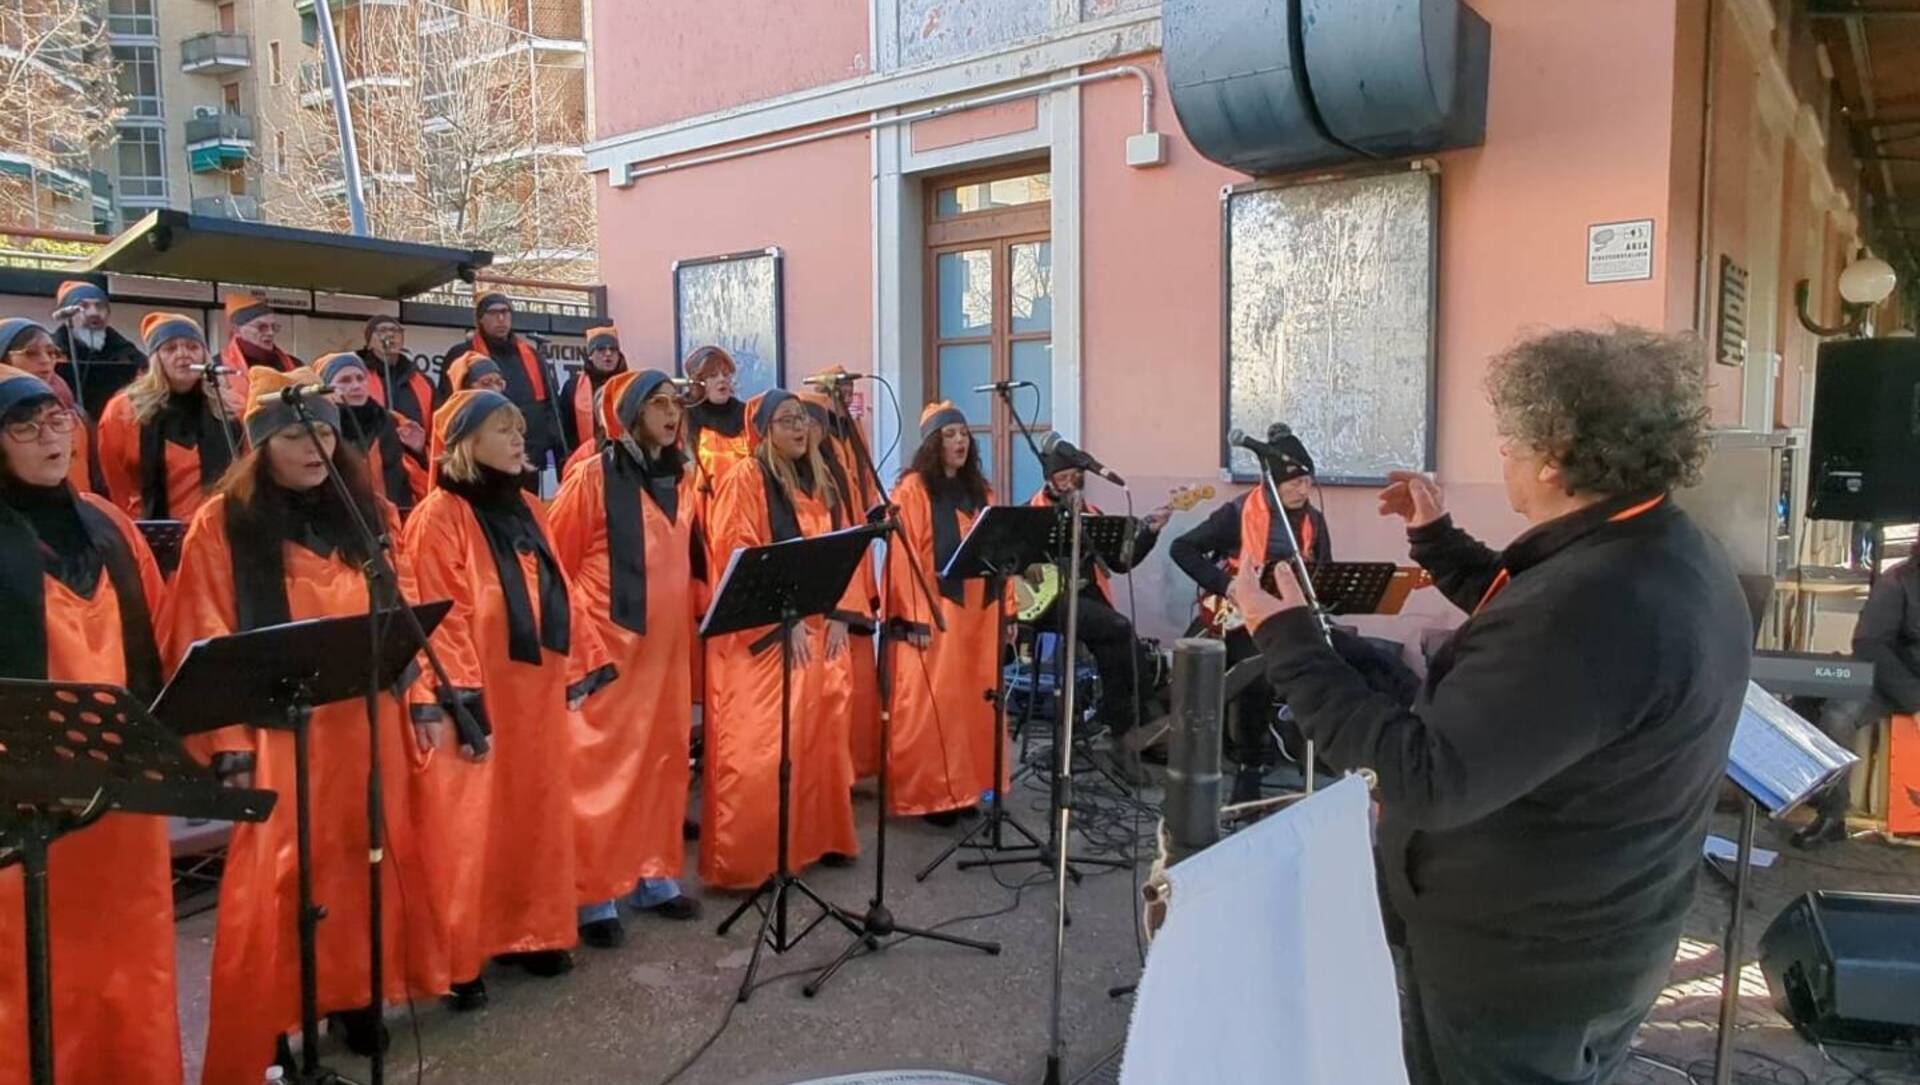 Saronno, treno “di Natale” in stazione con il coro gospel